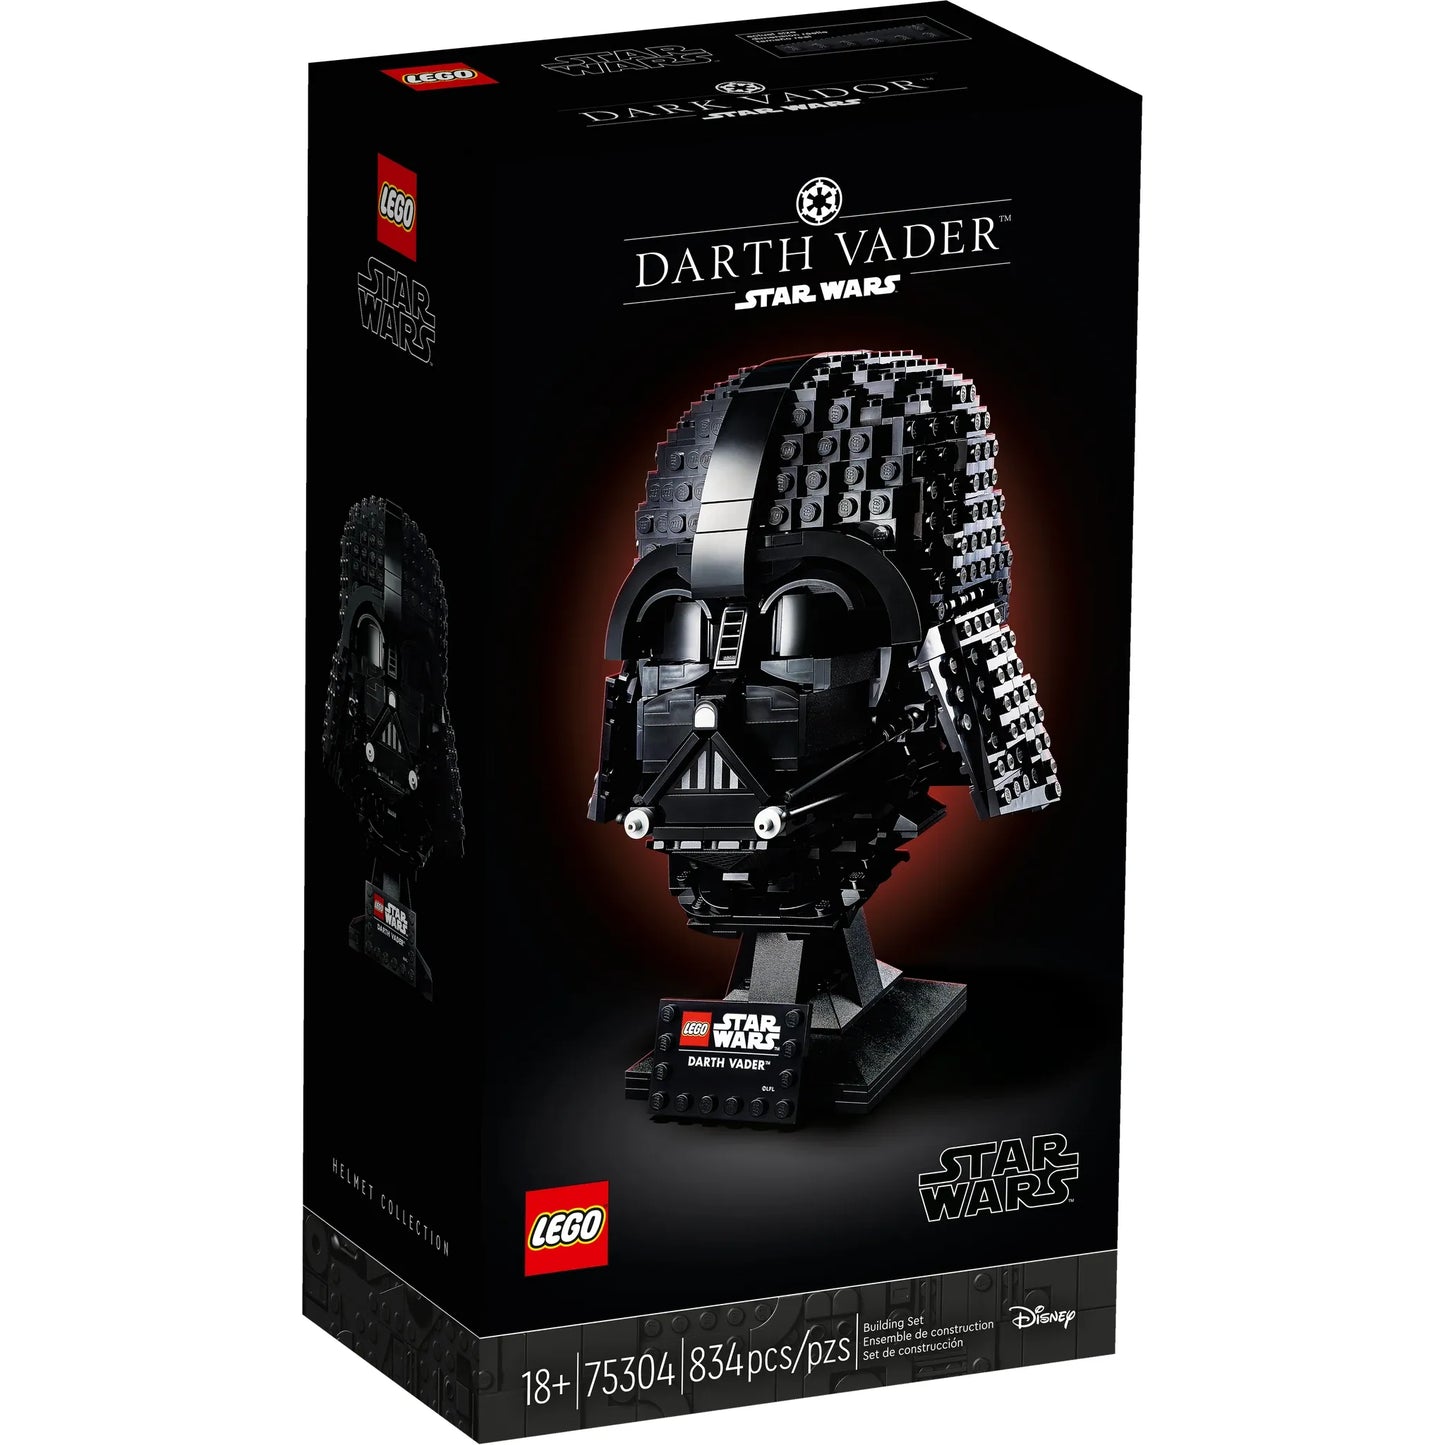 Star Wars: Darth Vader Helmet Building Kit